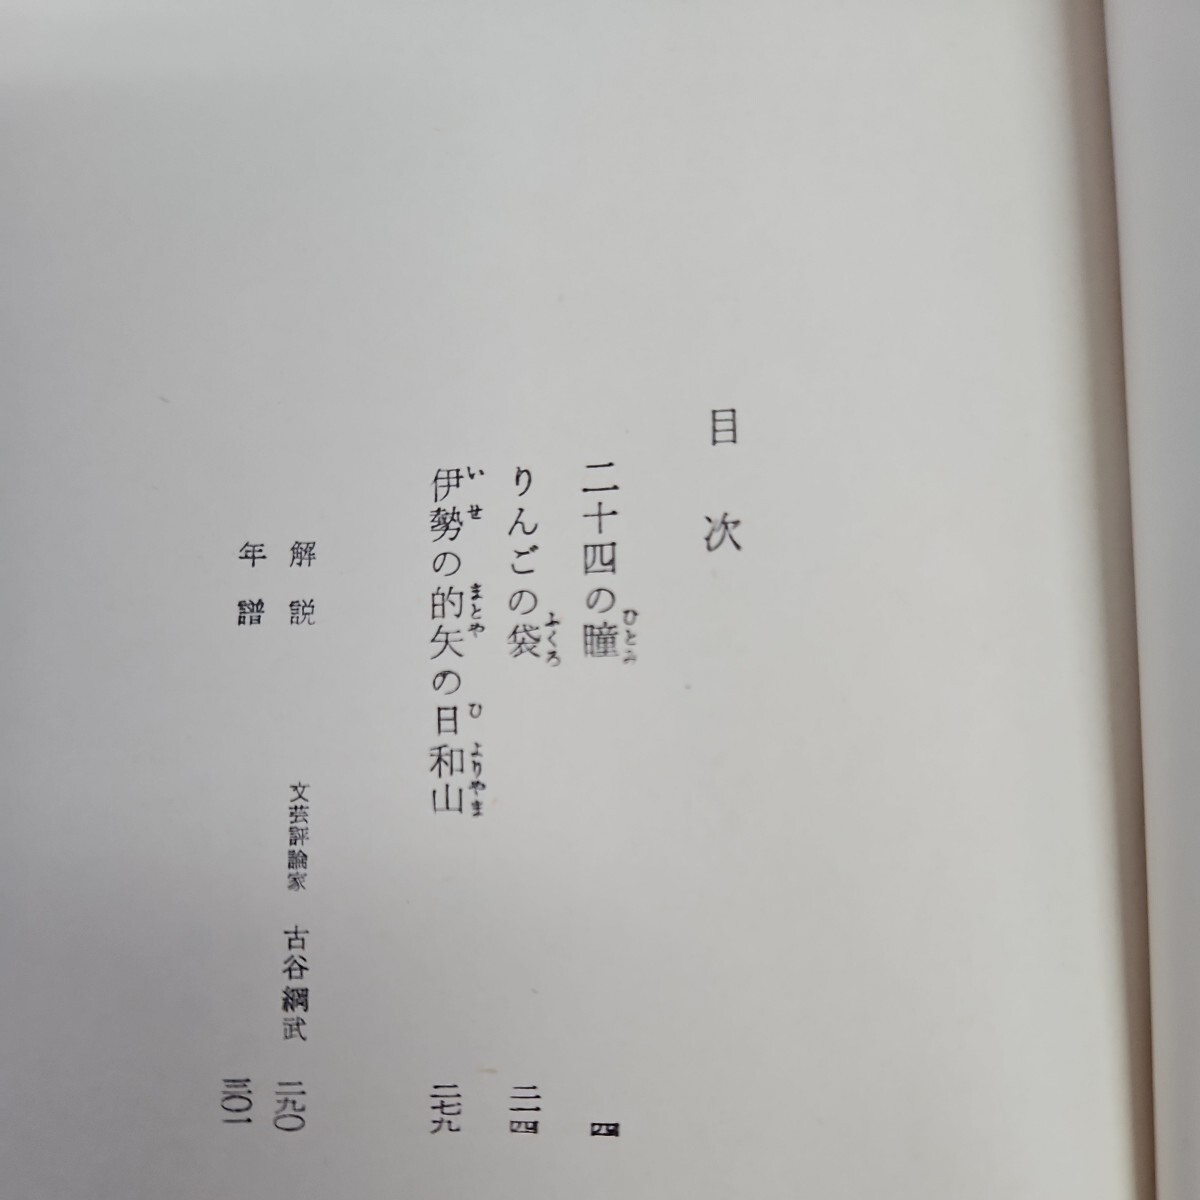 い41-002 二十四の瞳 ジュニア文学名作選 壺井栄_画像2